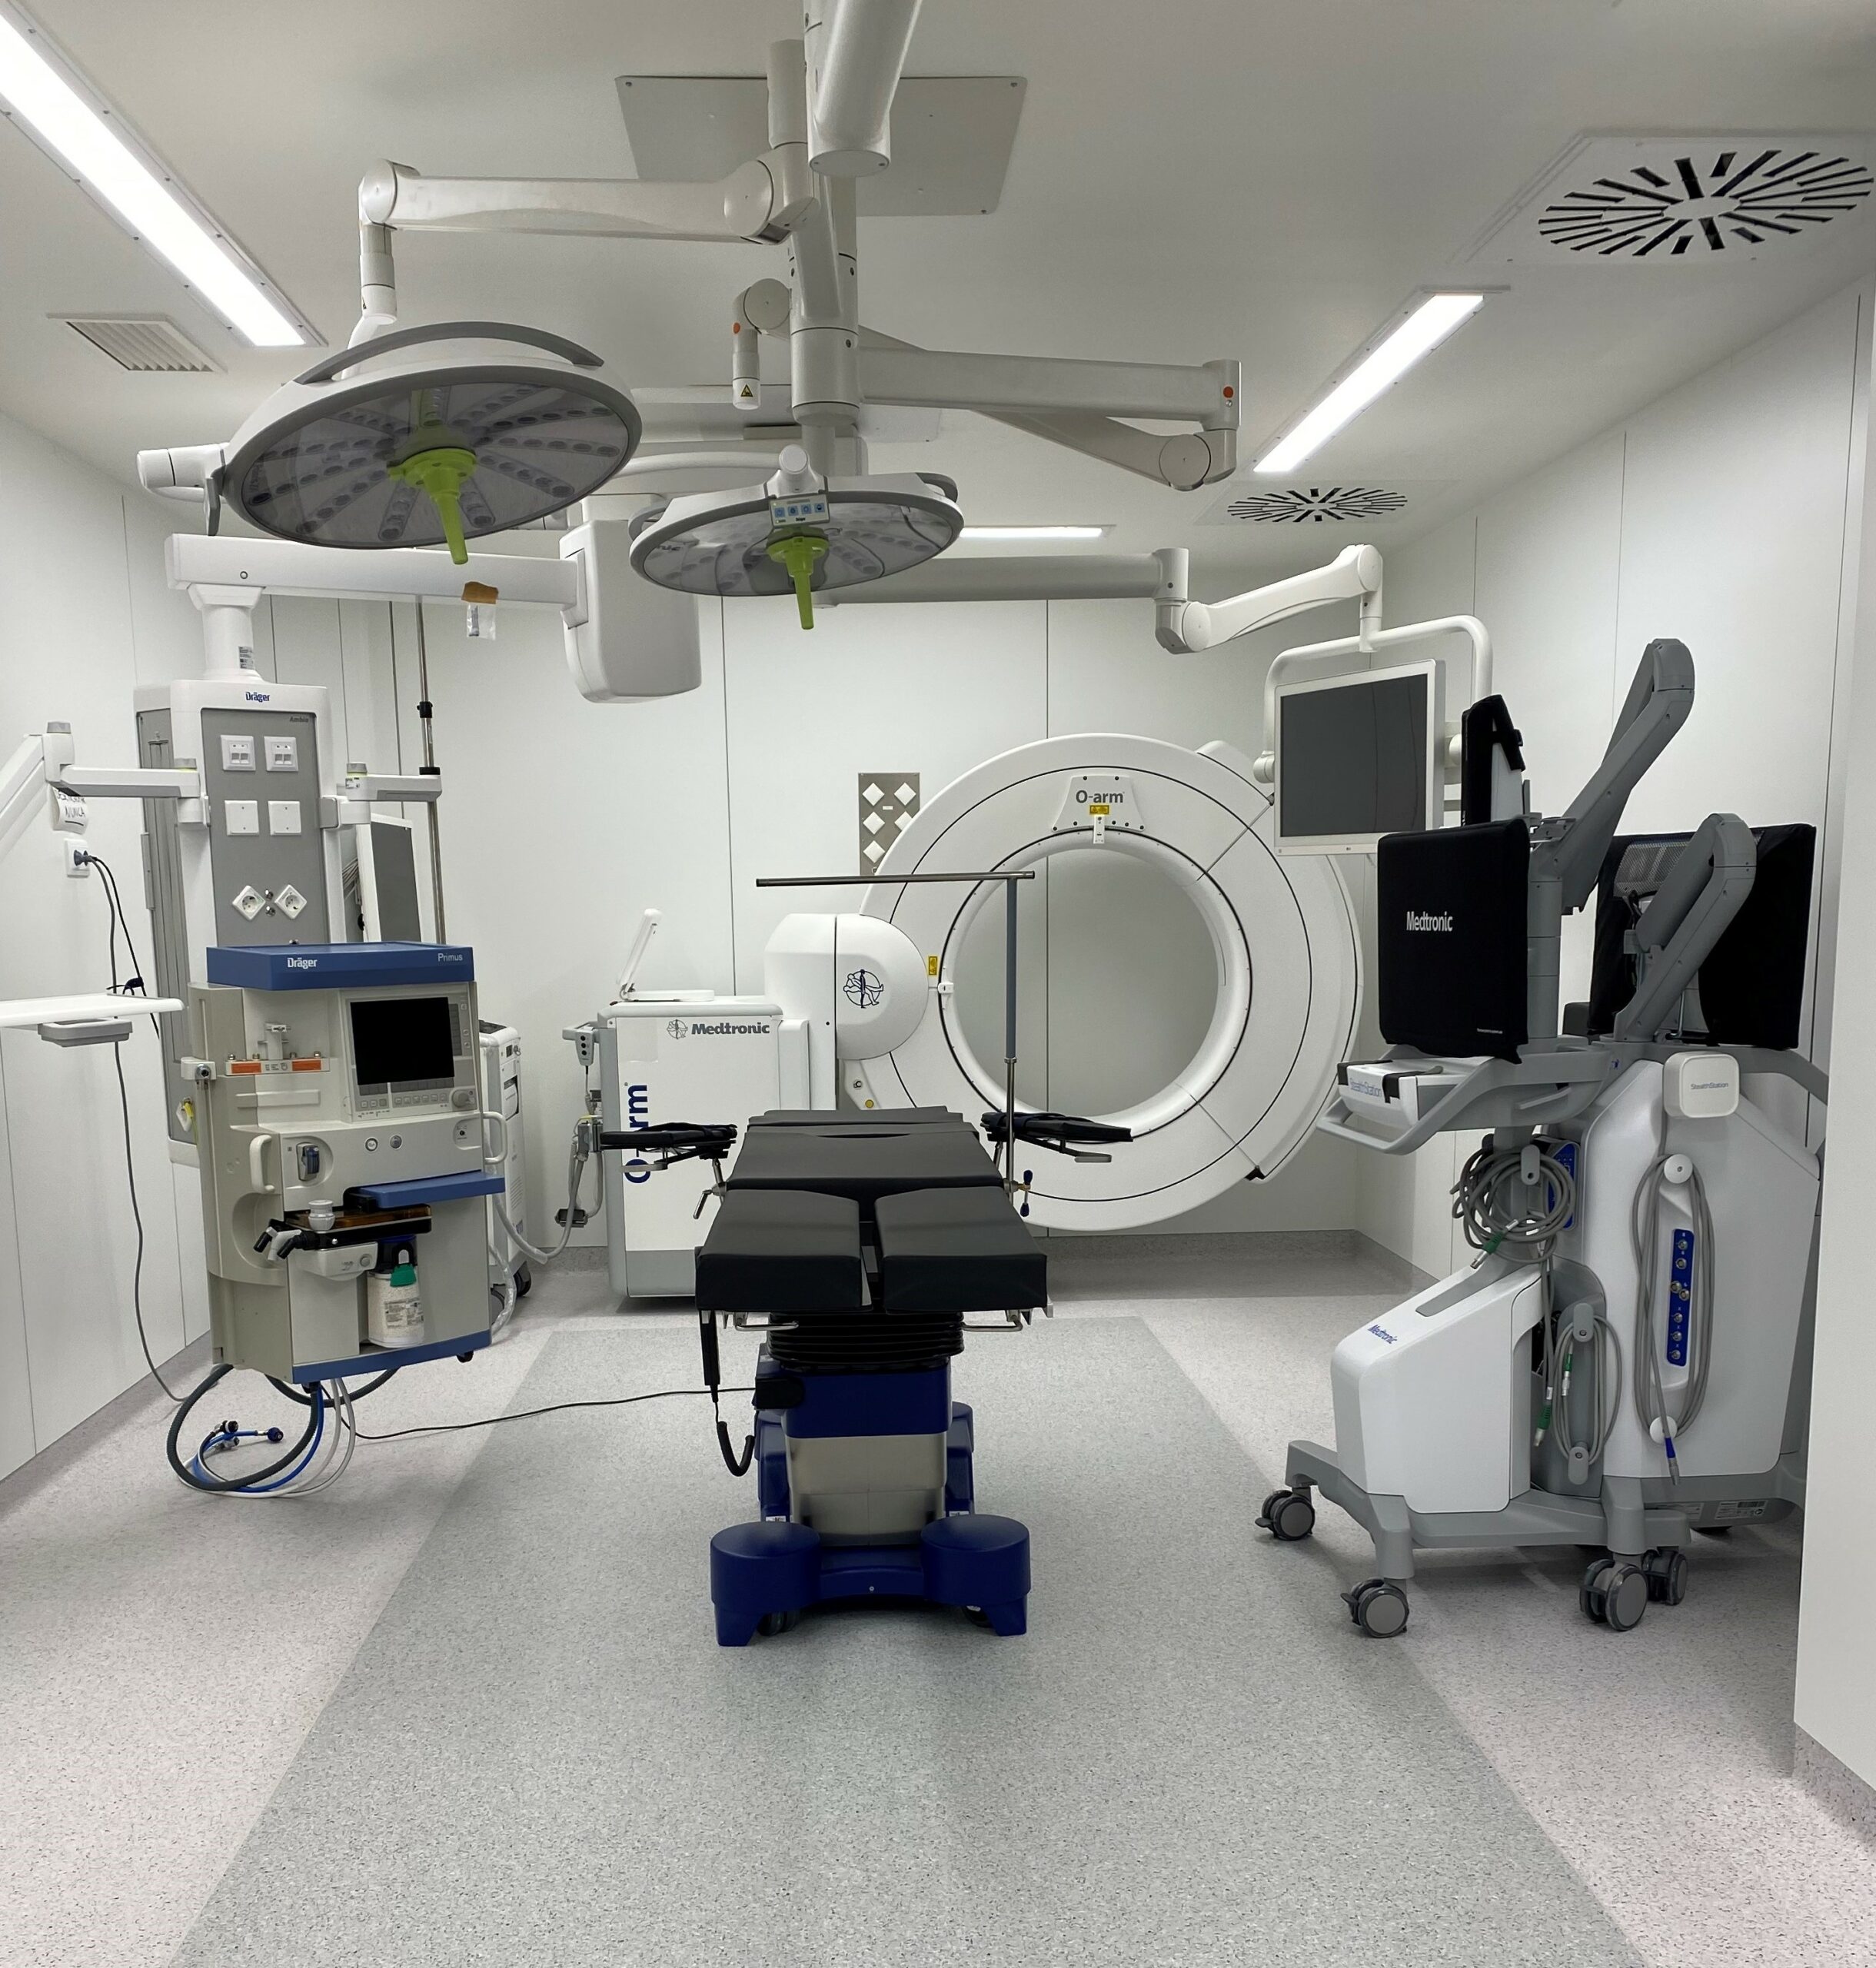 El Hospital Vithas Madrid Arturo Soria renueva su área quirúrgica con tecnología de última generación